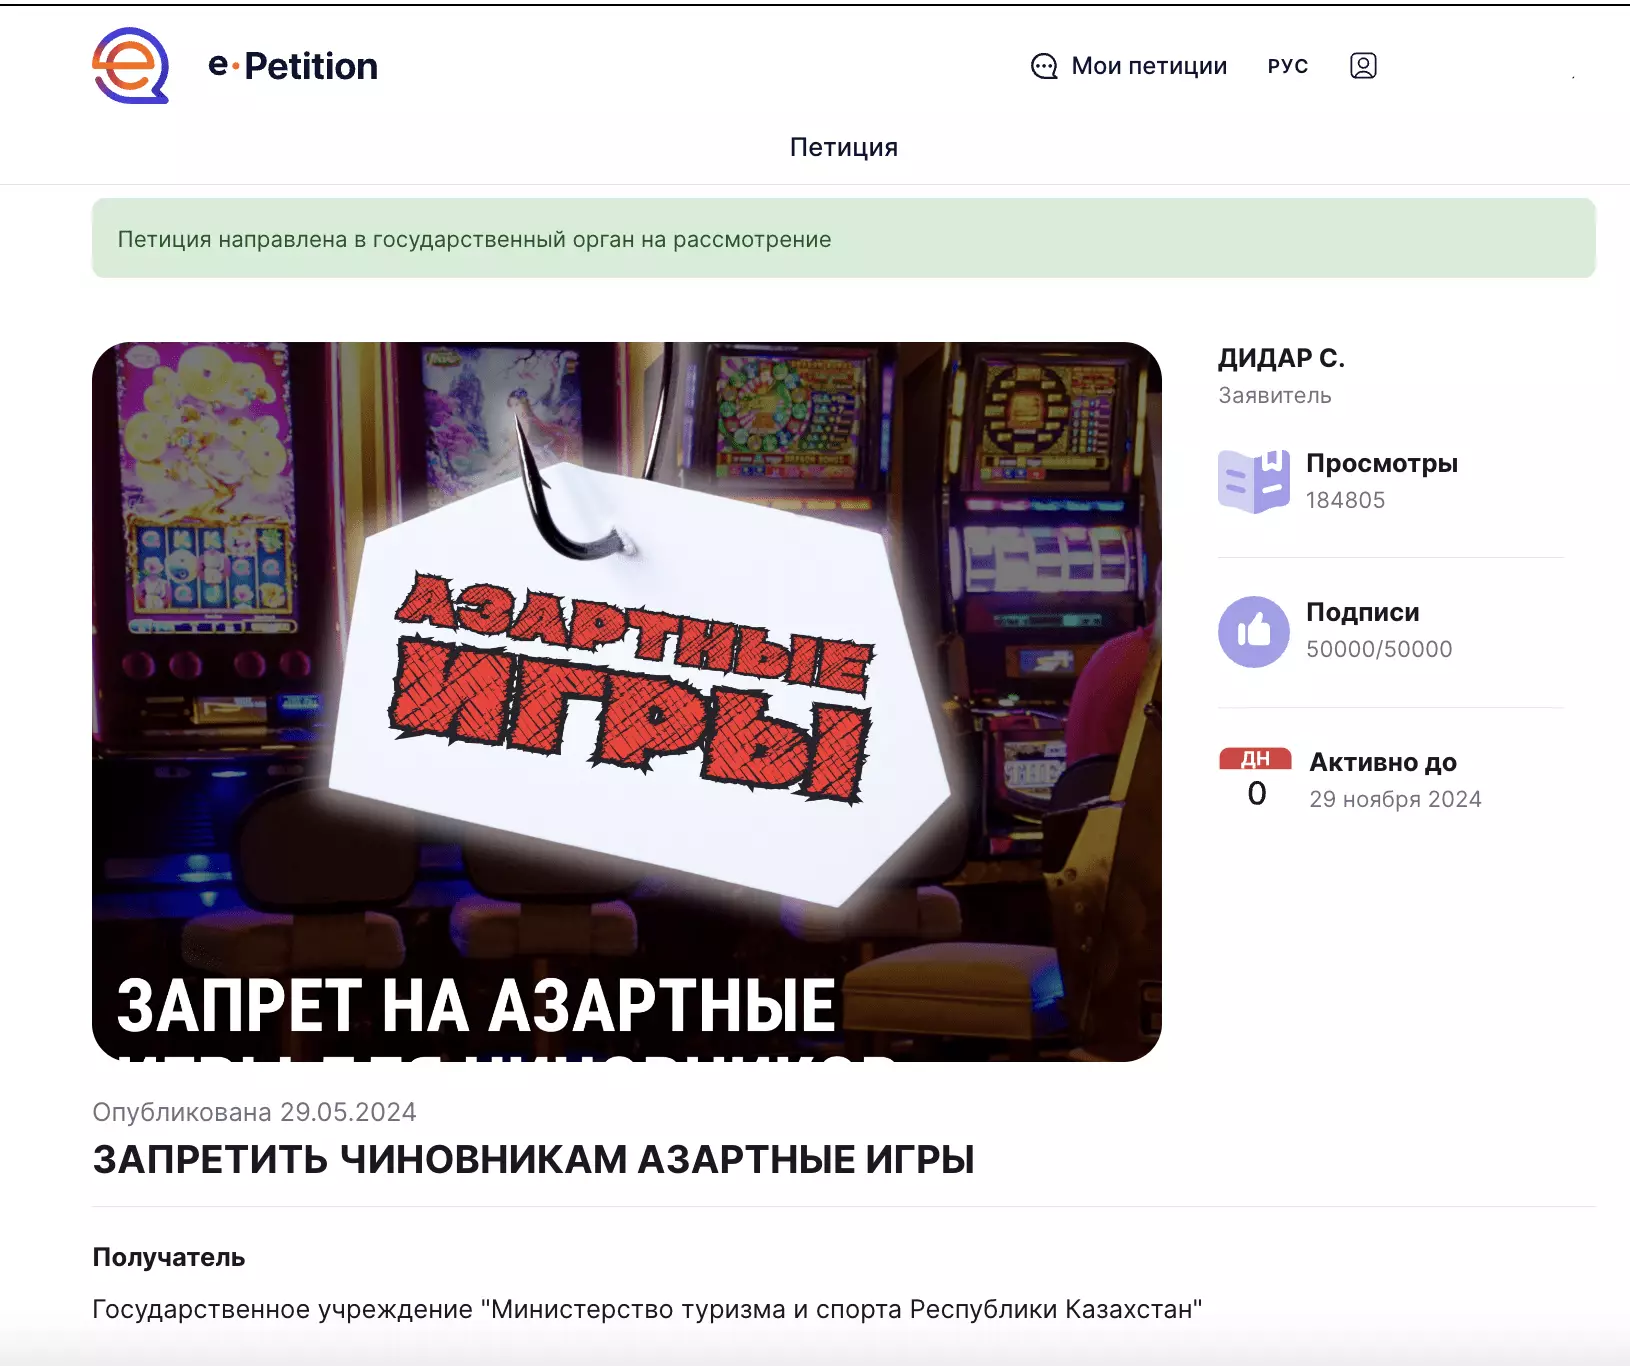 Петиция за запрет азартных игр для чиновников набрала 50 тысяч подписей